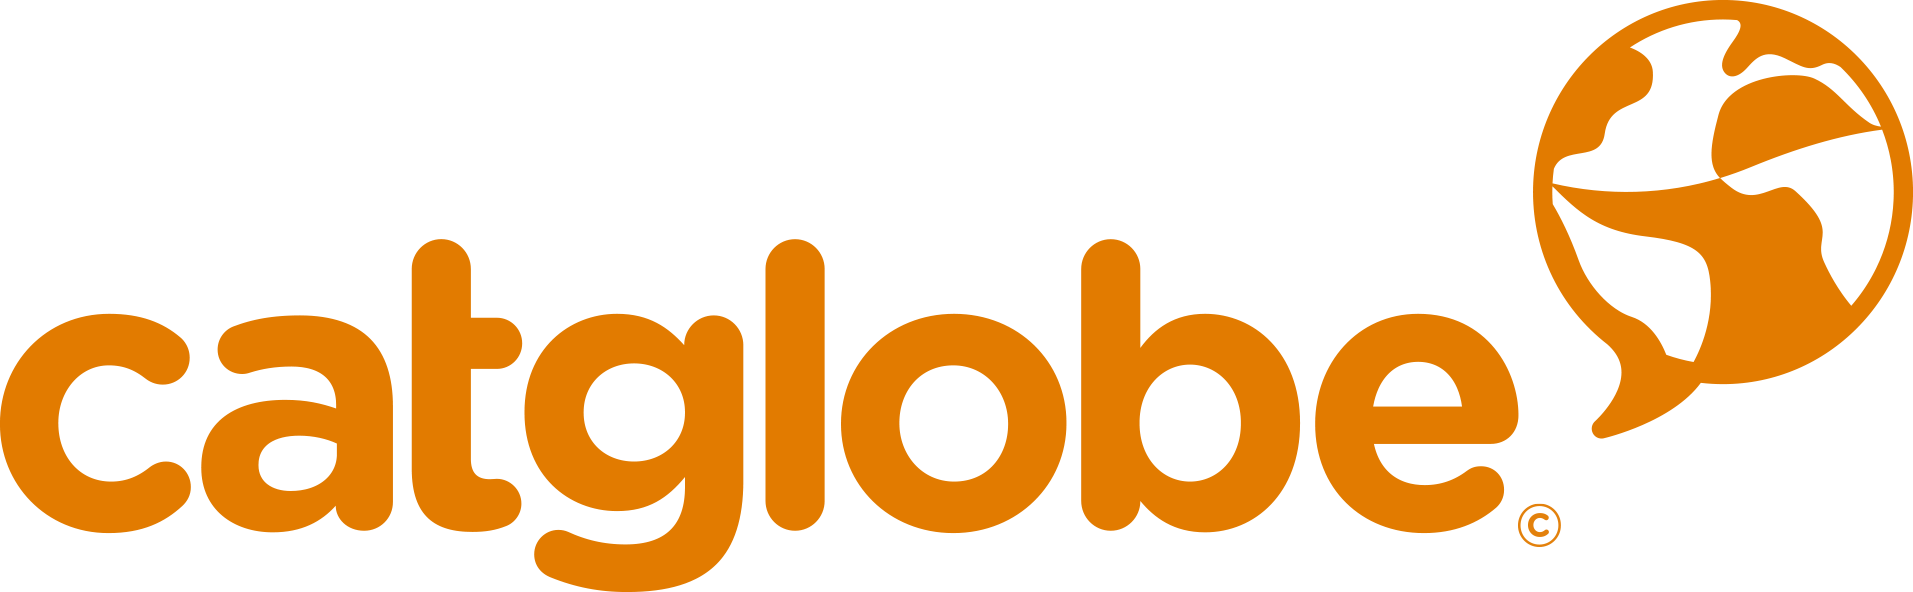 catglobe logo